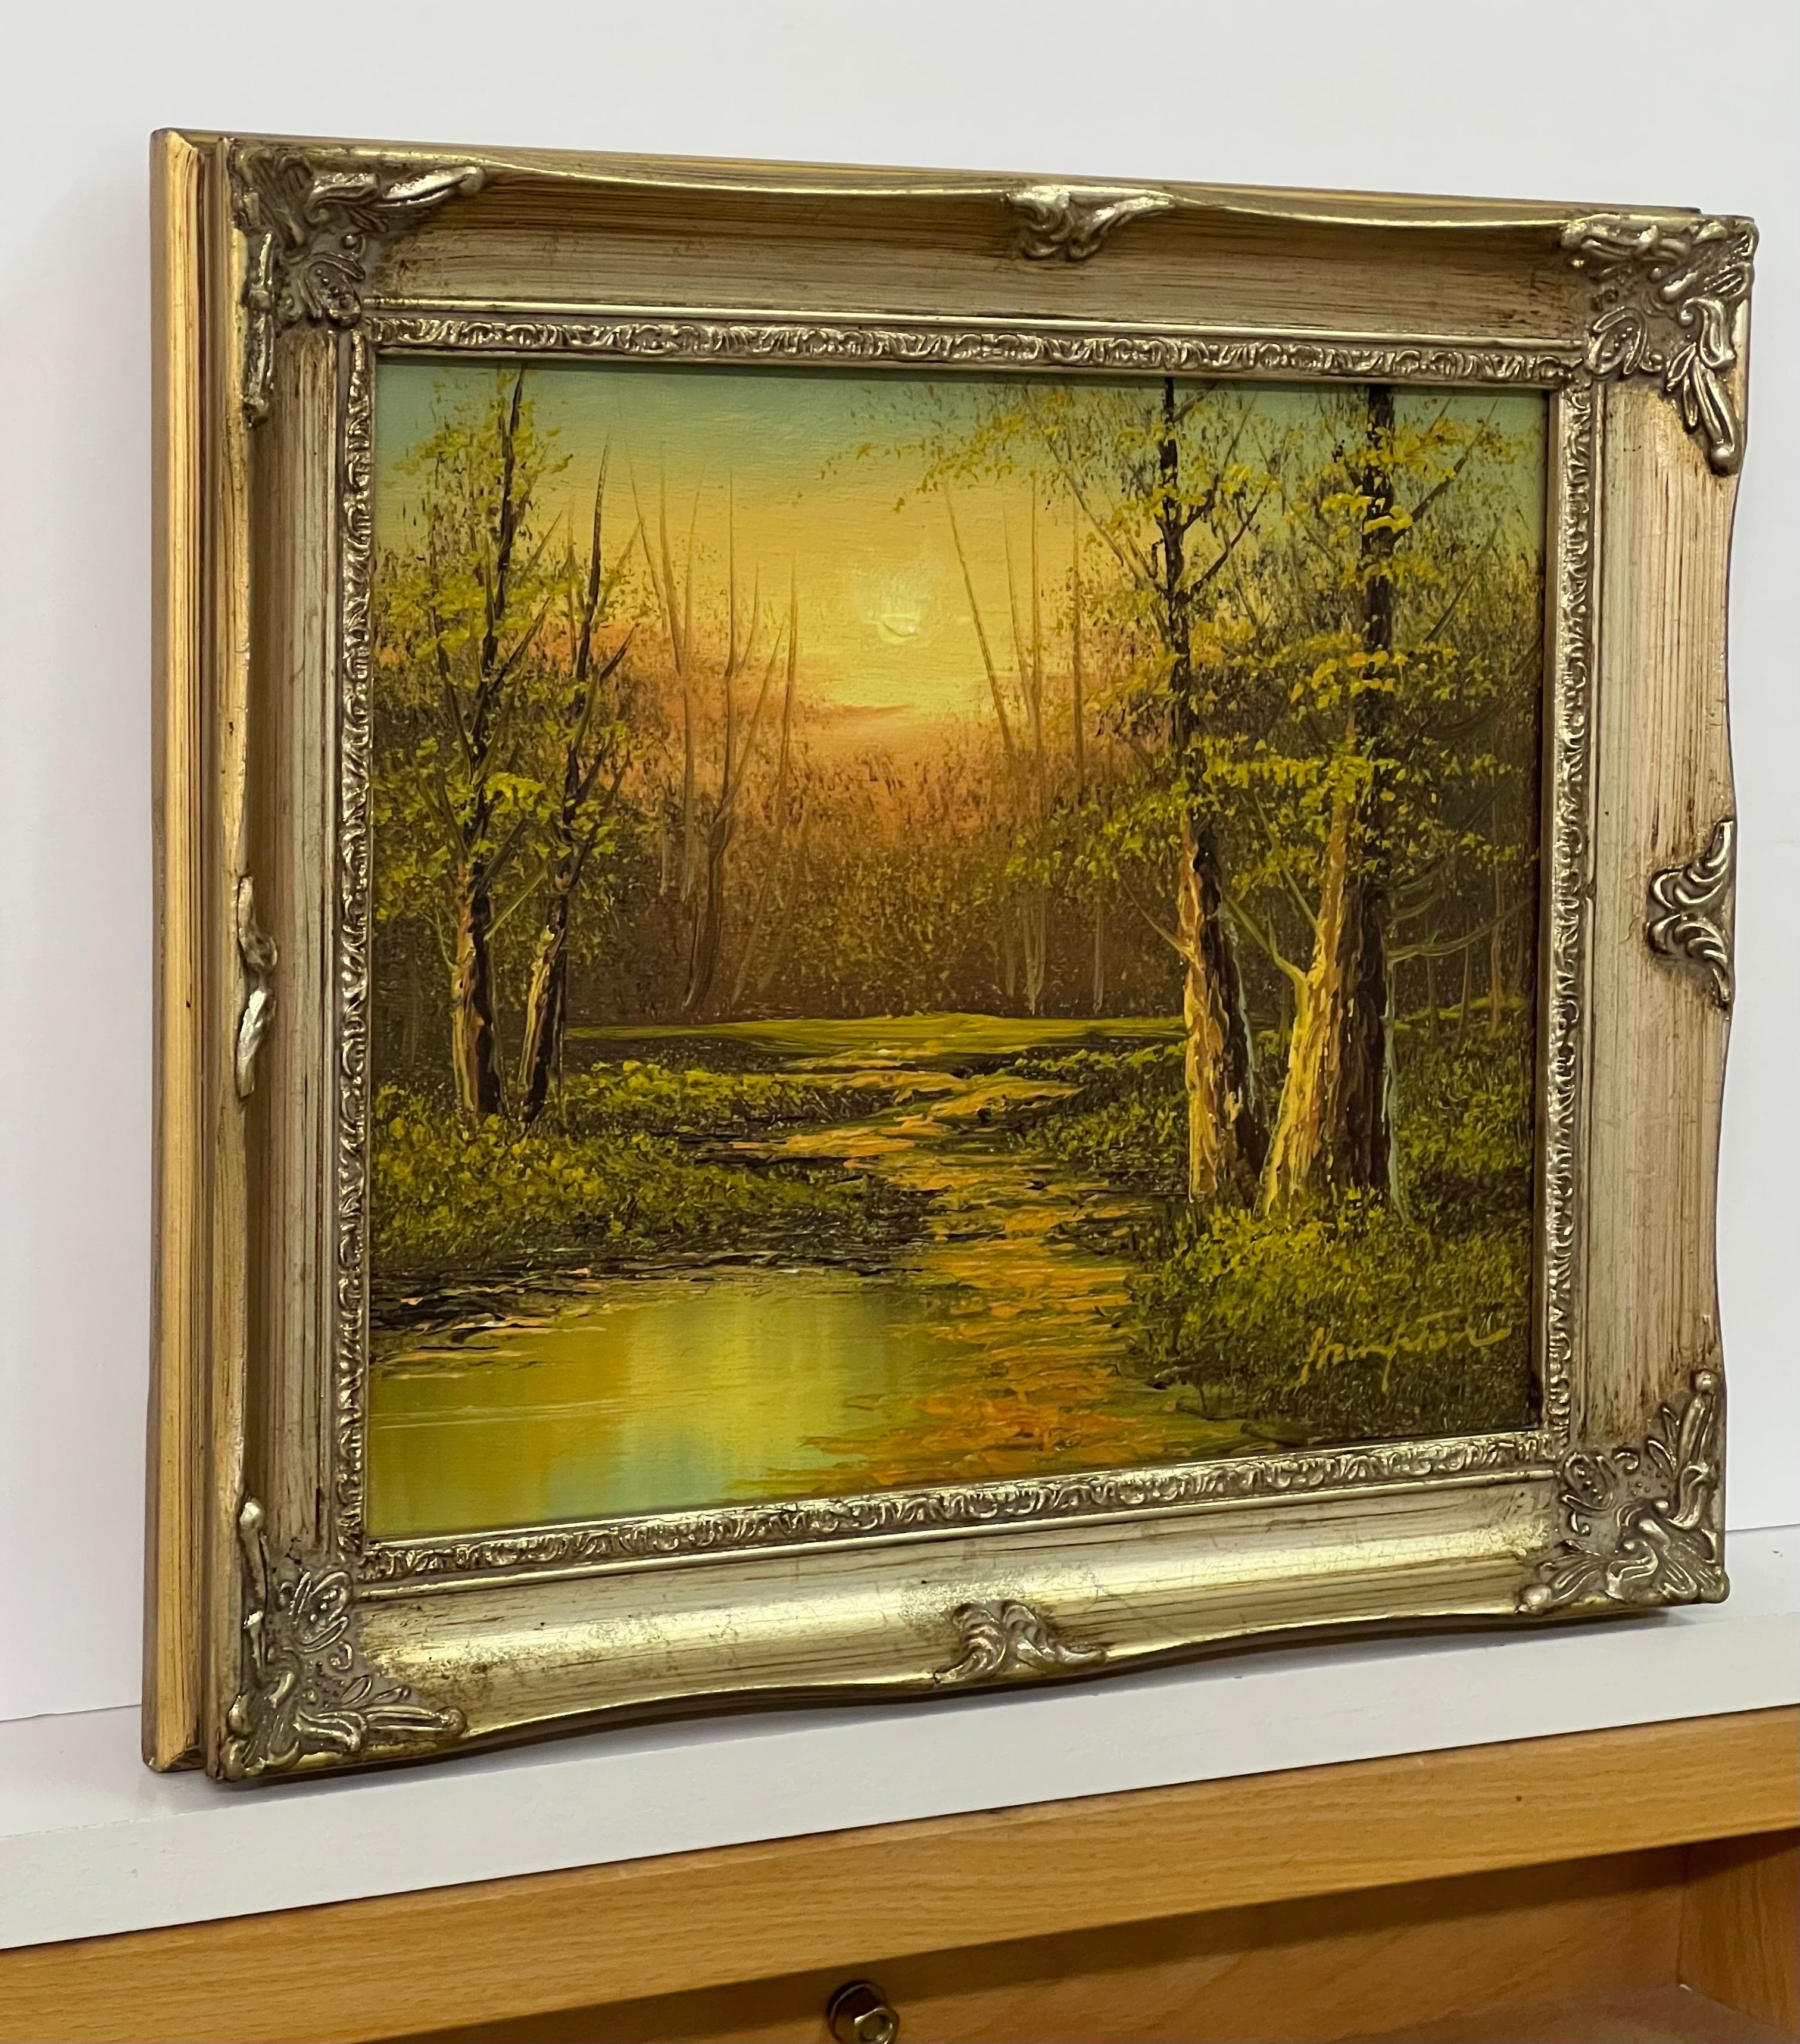 Vintage Ölgemälde von River Sunset in den Wäldern der englischen Landschaft (Realismus), Painting, von Hampton